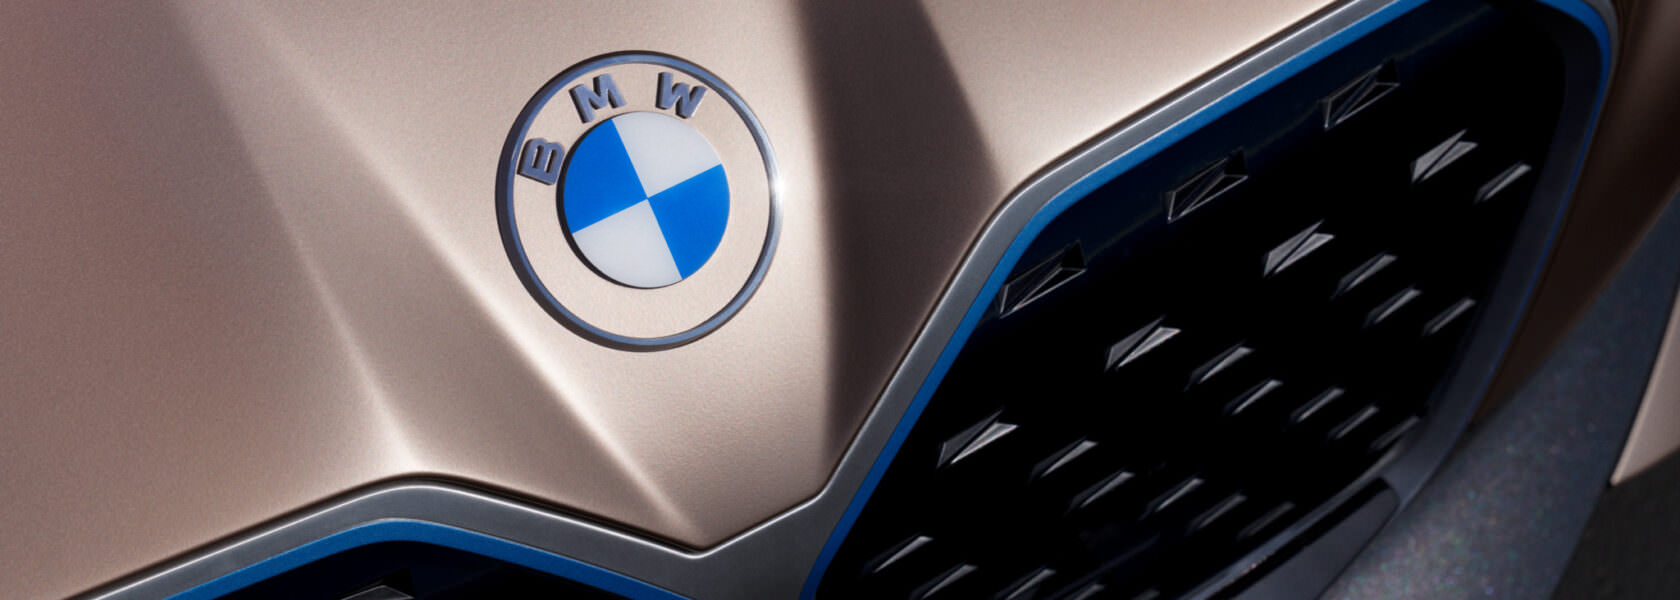 BMW Concept i4 2020